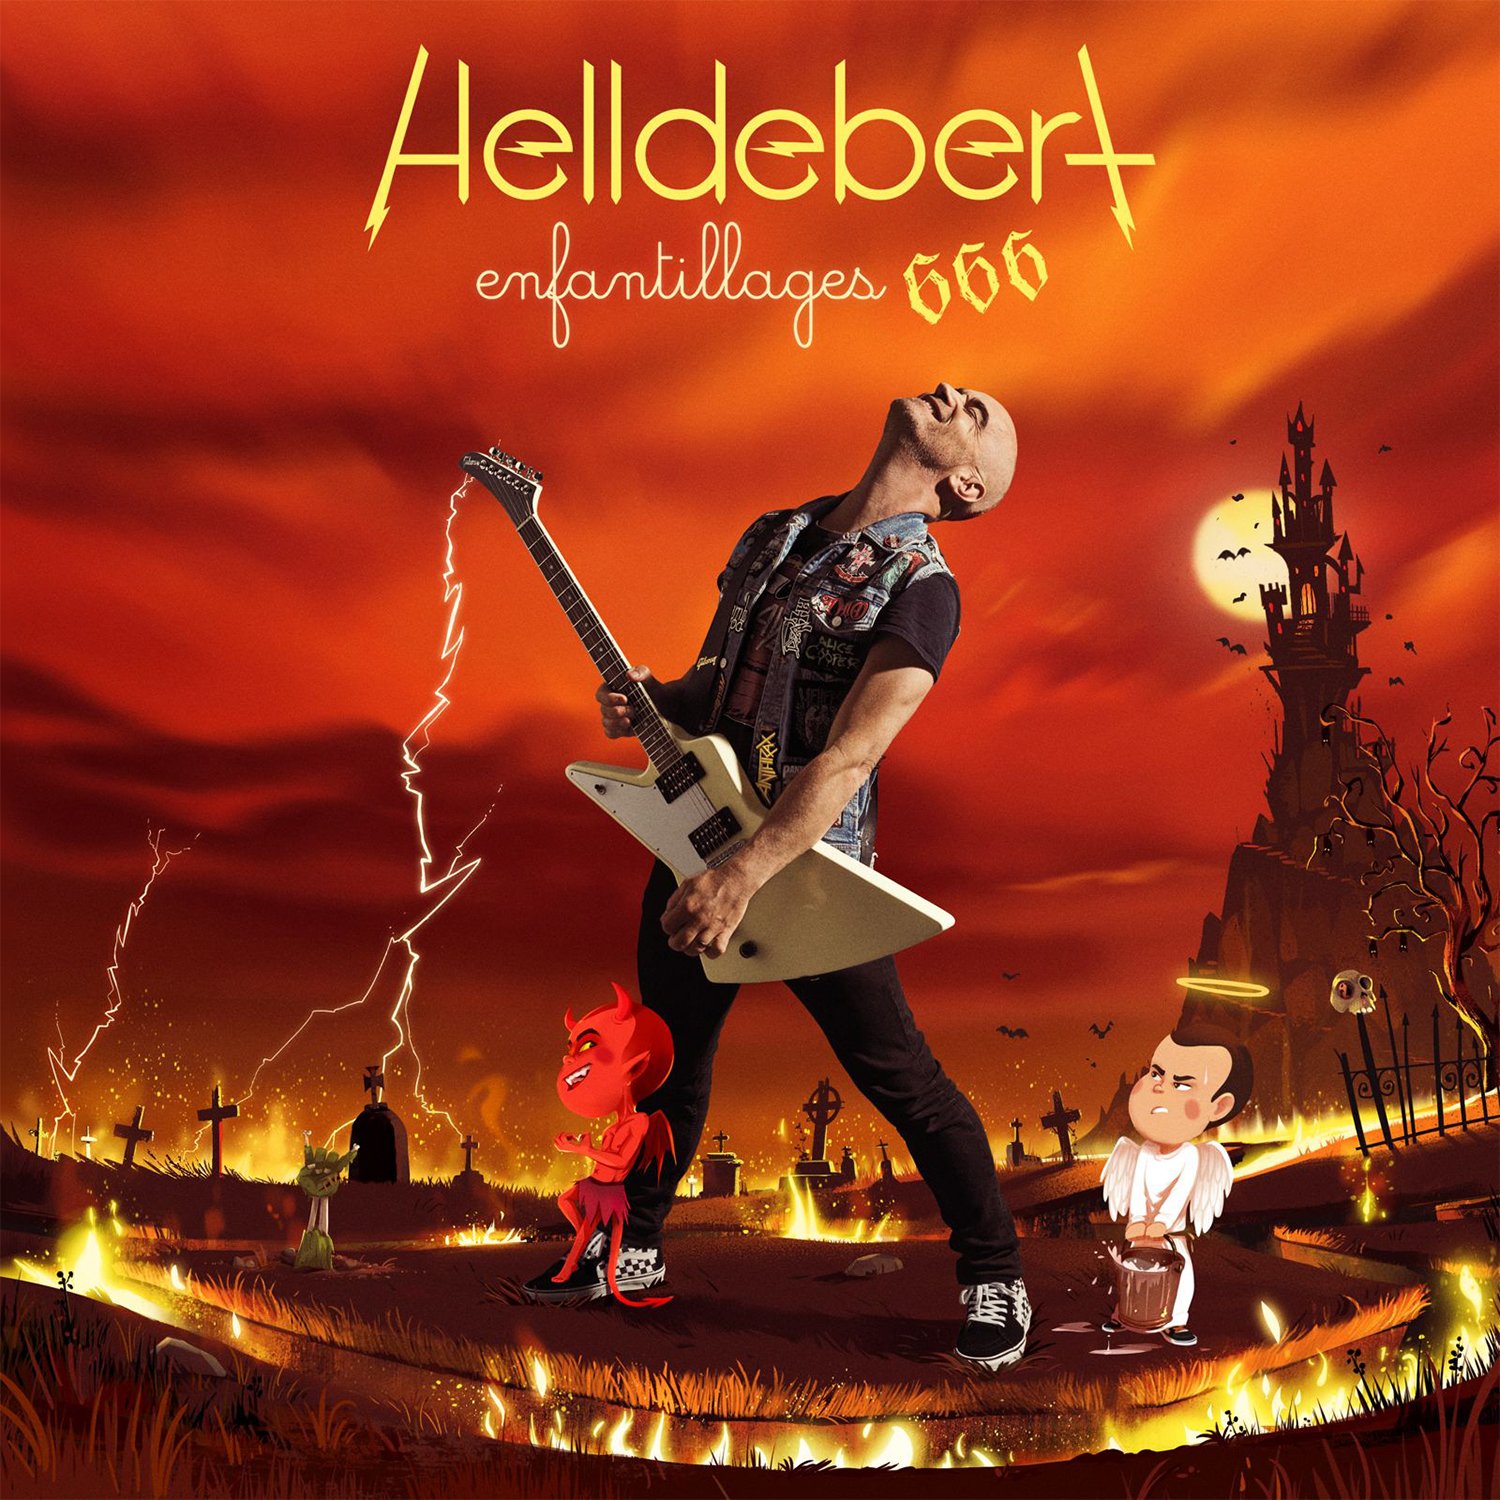 Visuel du nouvel album « Helldebert - Enfantillages 666 » d'Aldebert